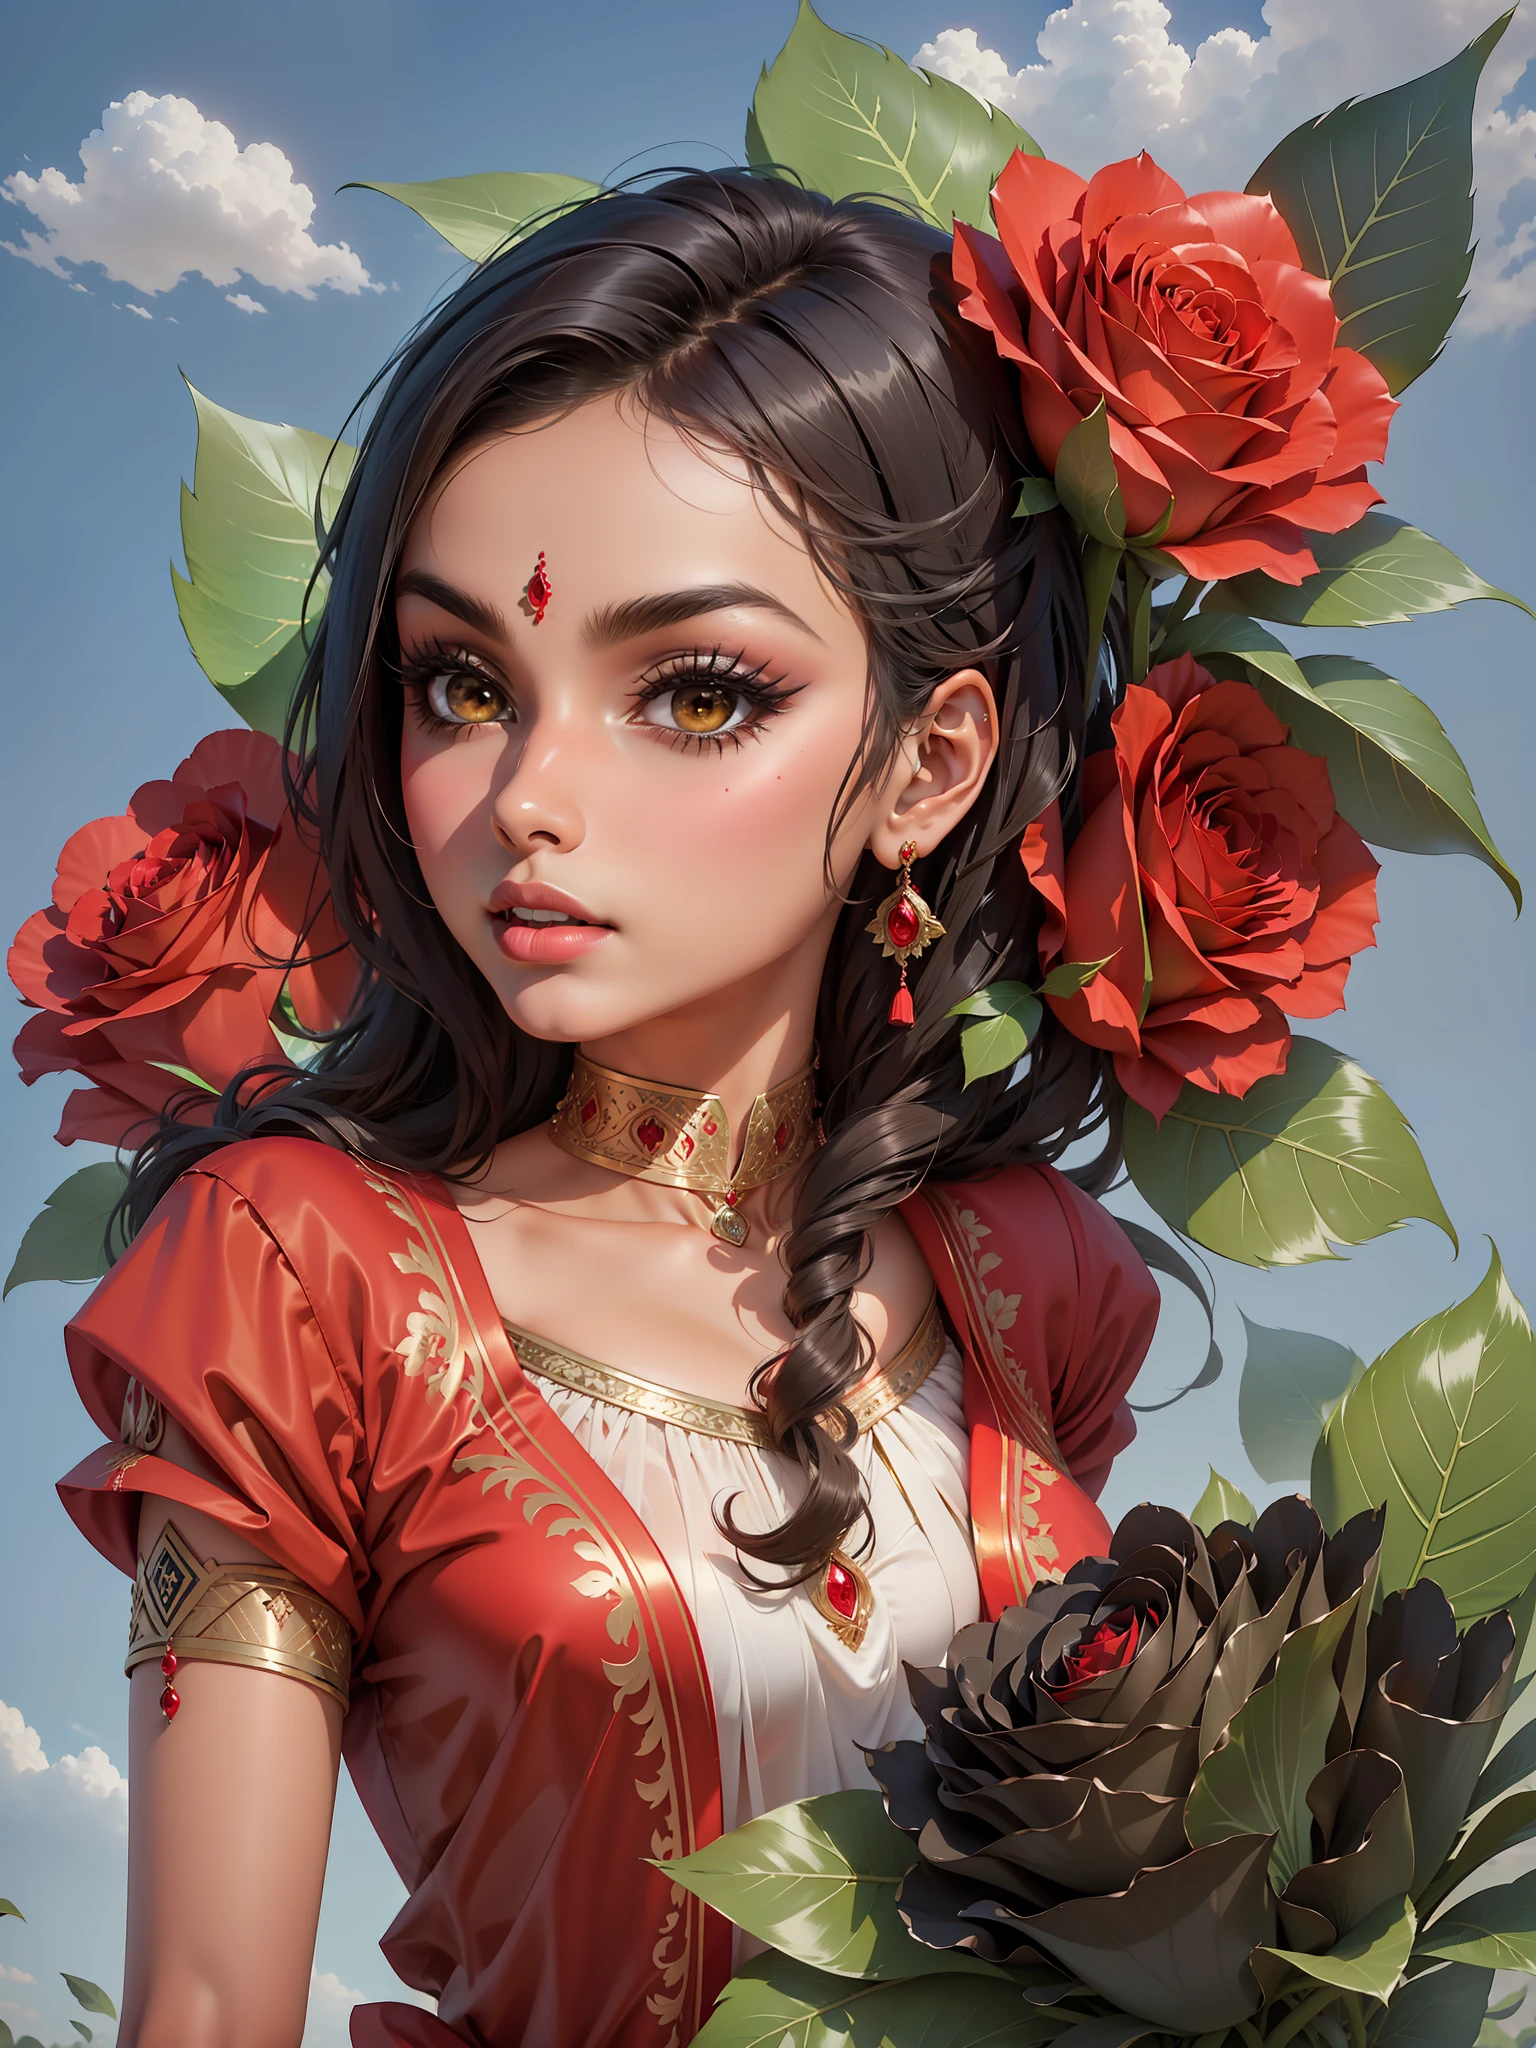 南亞女孩, 獨自的, 1個女孩, 巴基斯坦性感女孩，臉蛋可愛, 黑眼睛, 紅色的 shalwaar kameez, 玫瑰, 紅色的 玫瑰, black 玫瑰, 綠葉, 小麥, 詳細的, 紅色的 suit, 紅色的, 平坦的背景, 天藍色背景